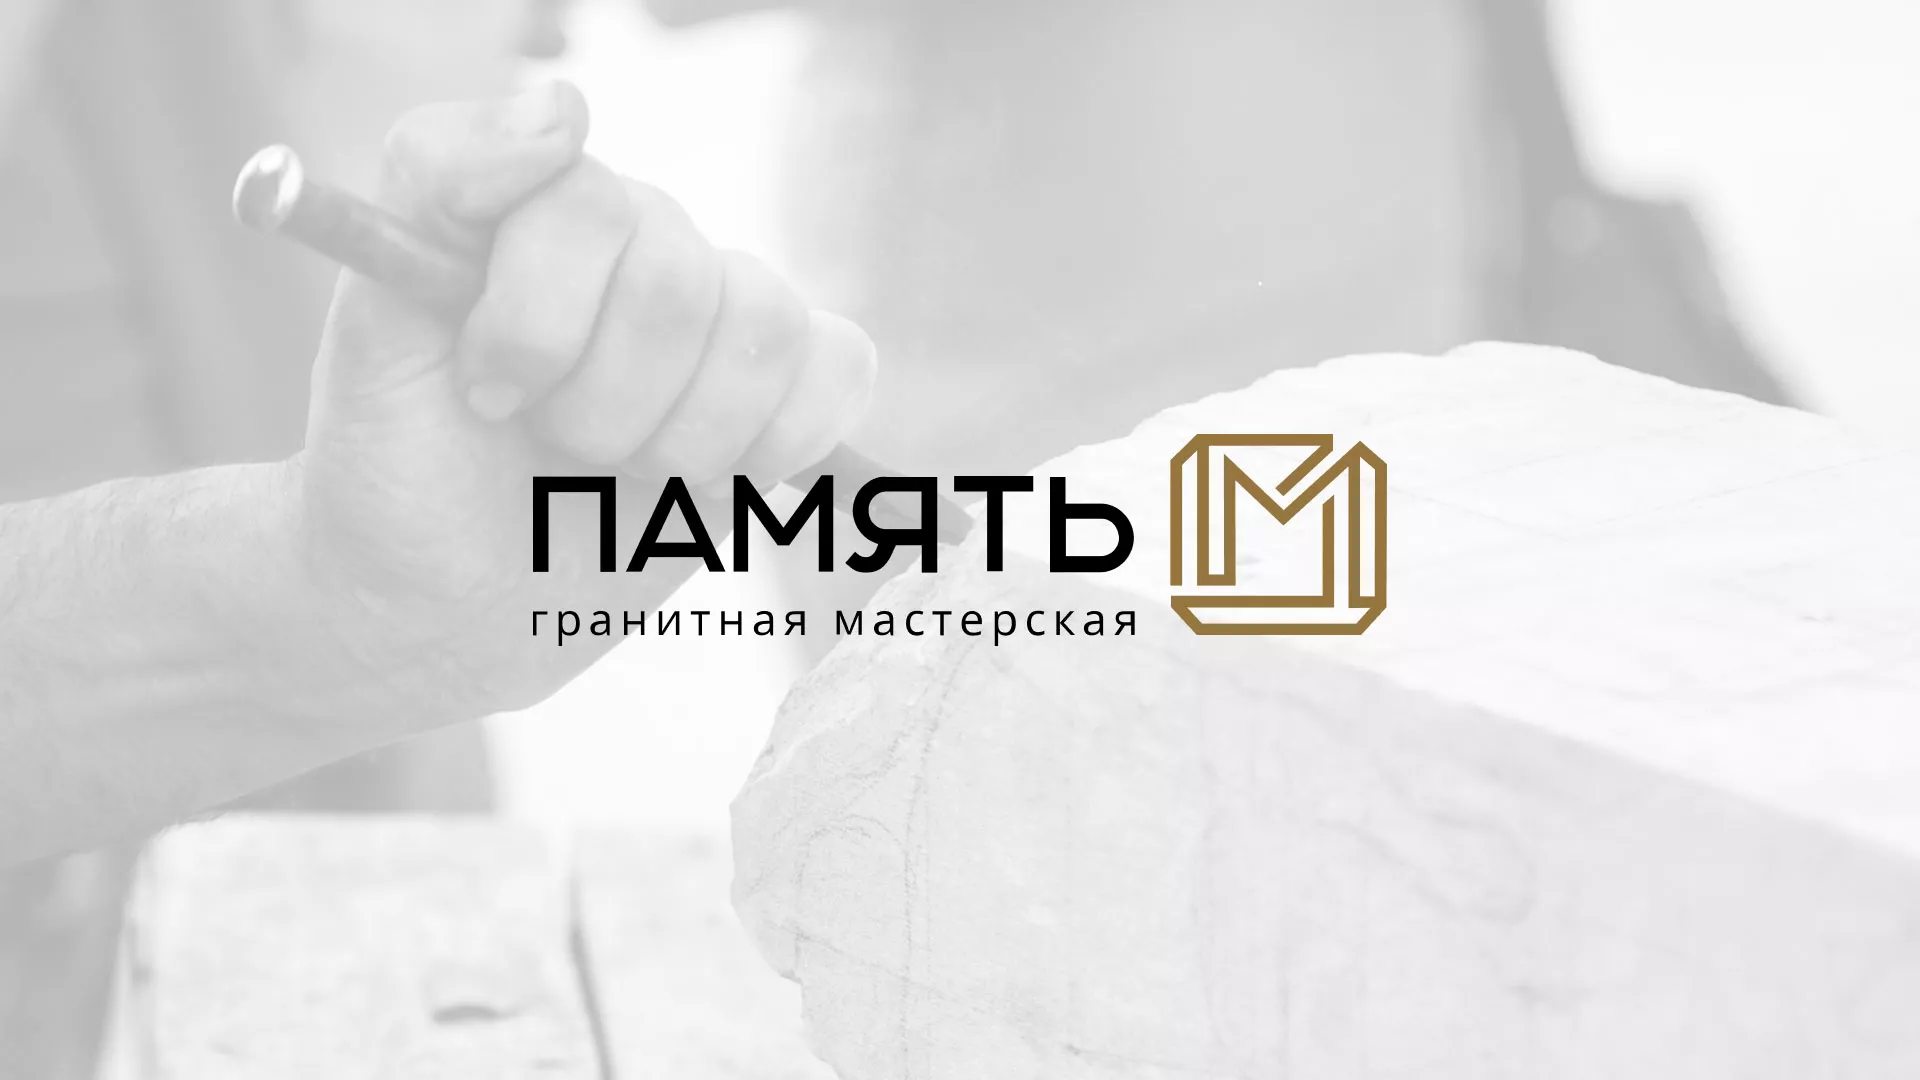 Разработка логотипа и сайта компании «Память-М» в Звенигово